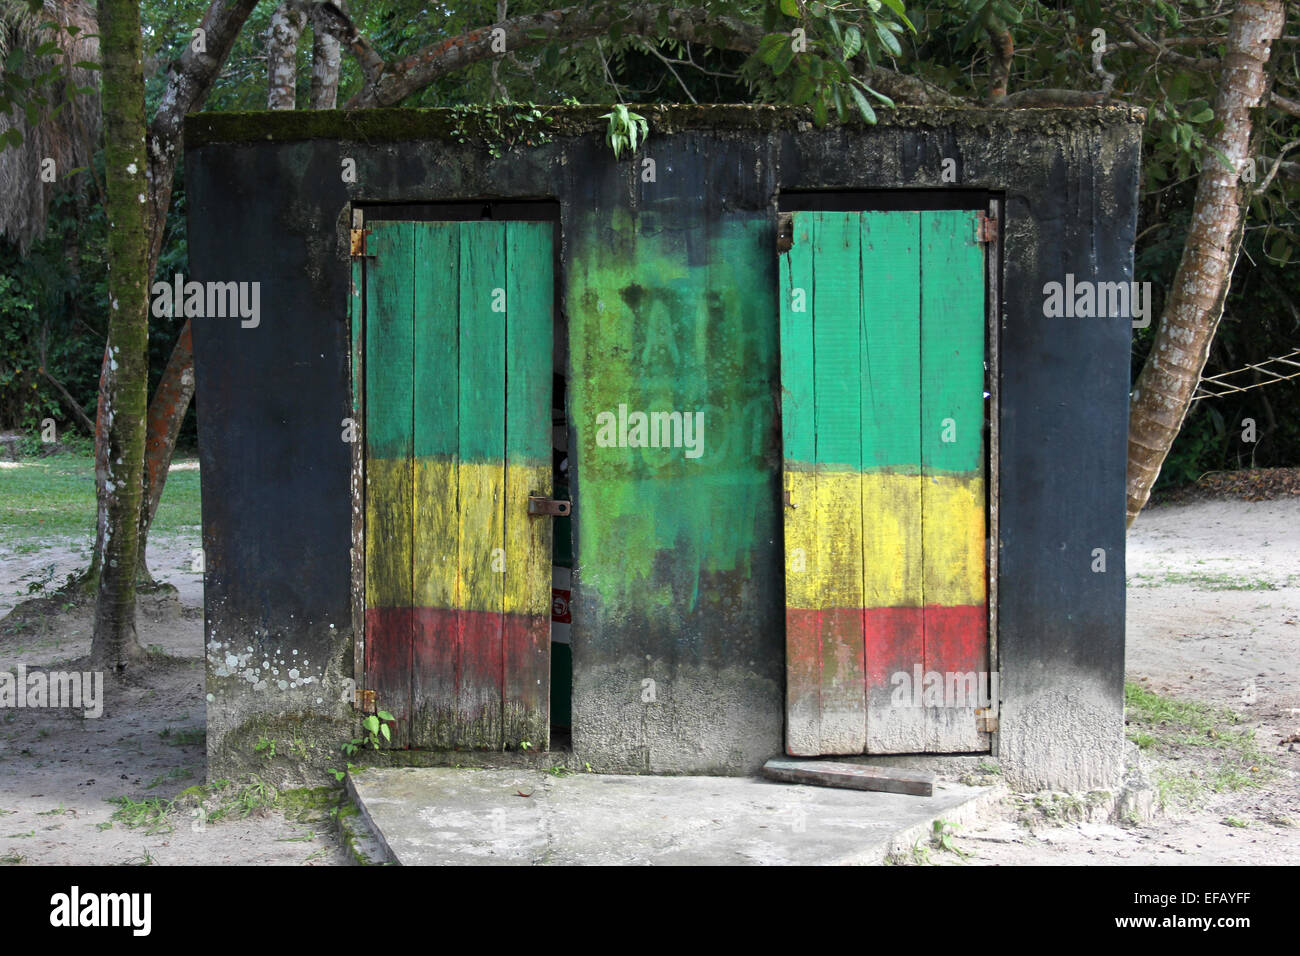 Badezimmer In Rastafari-Farben lackiert Stockfoto